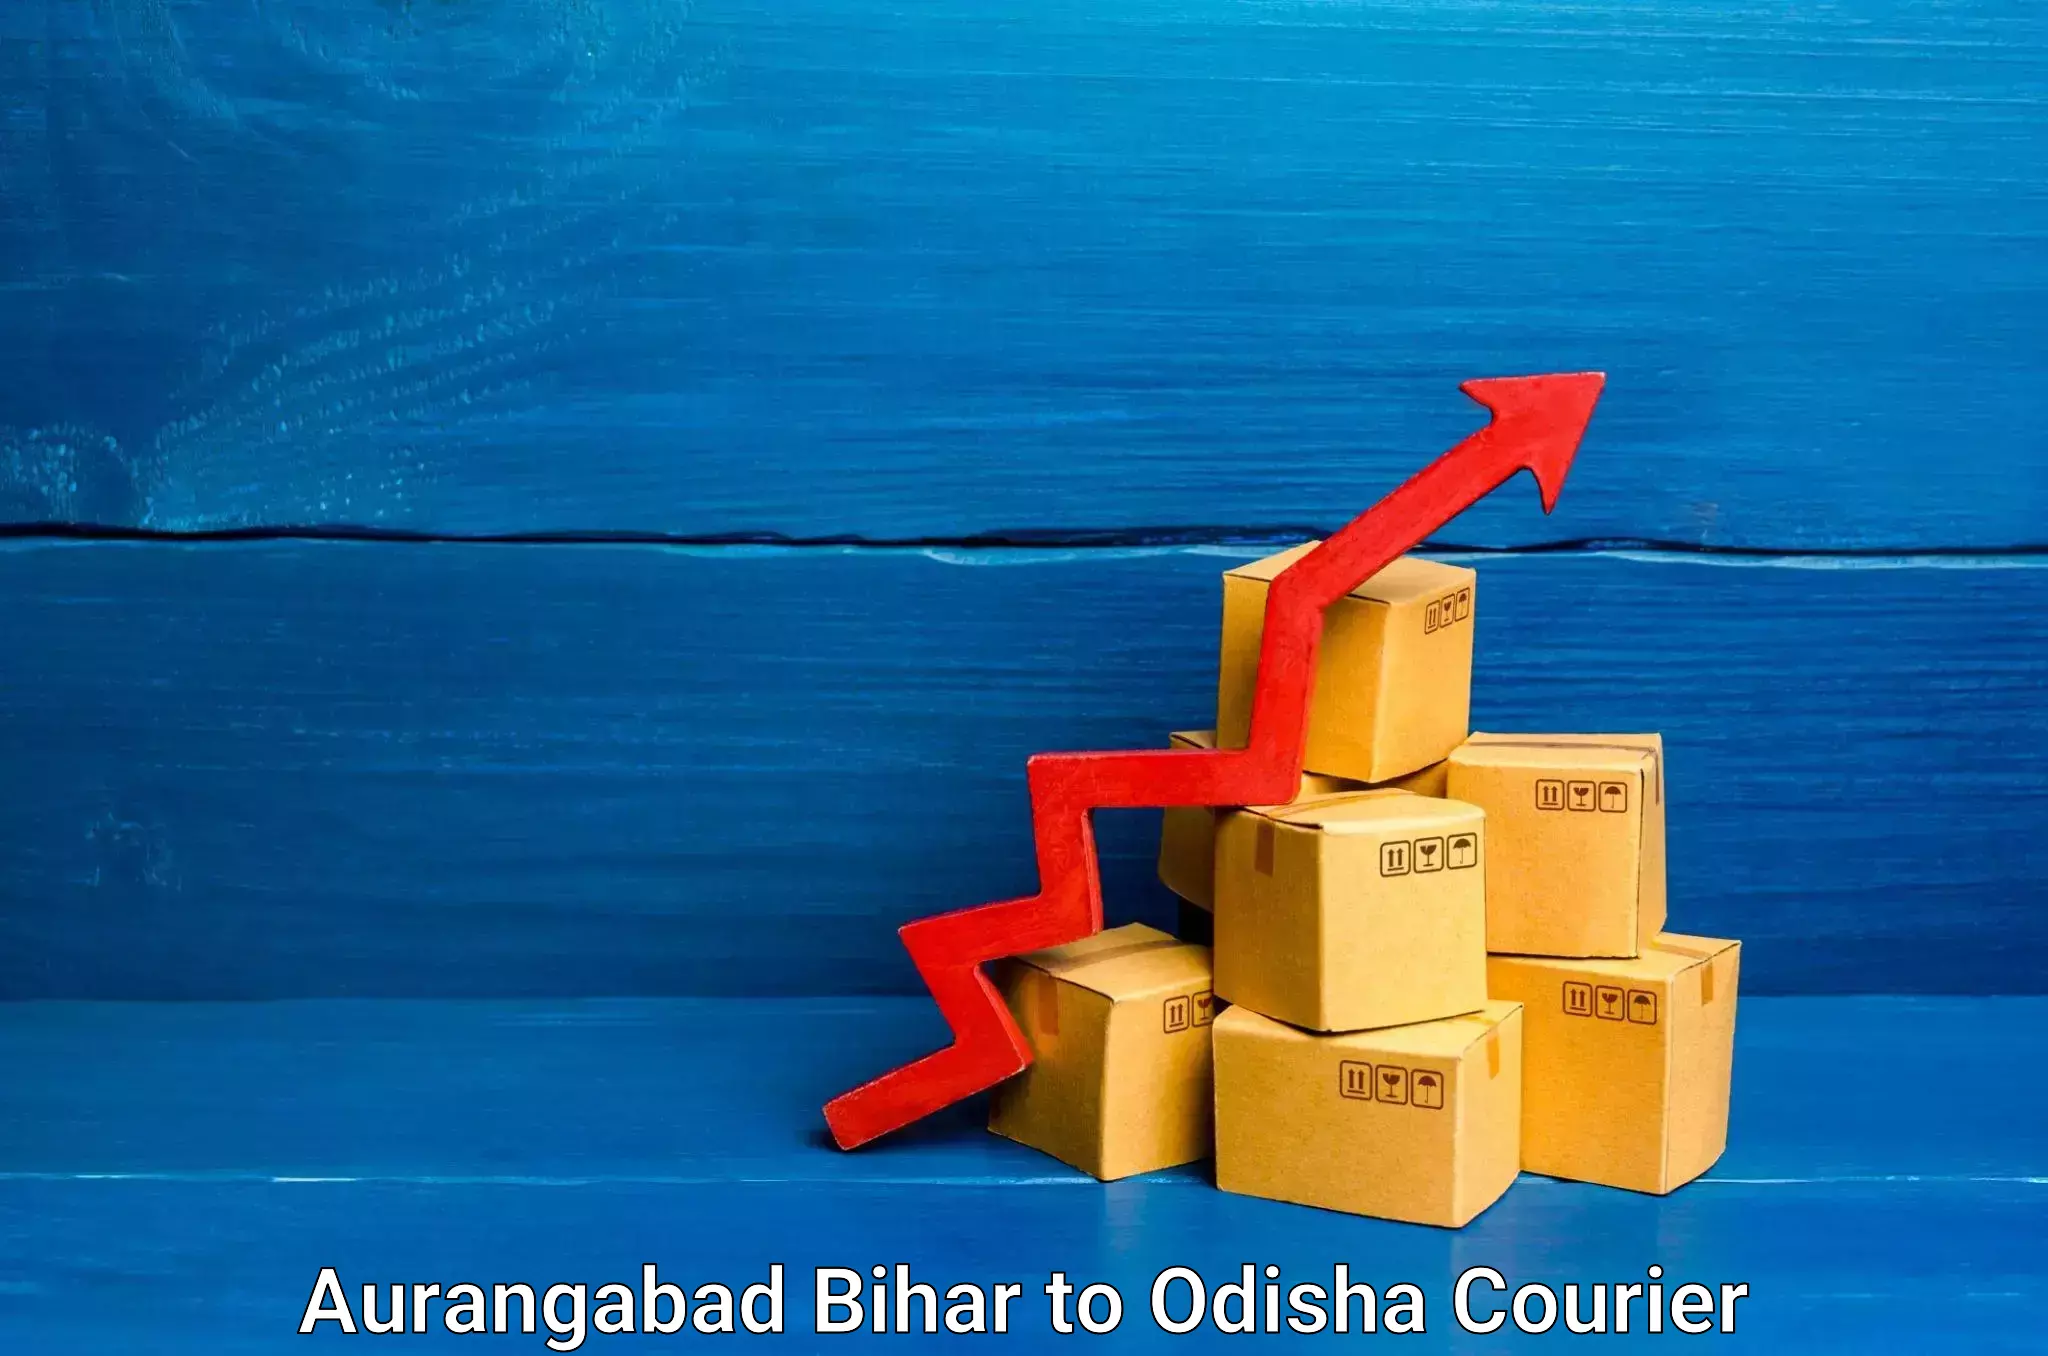 Expert moving and storage Aurangabad Bihar to Dhamara